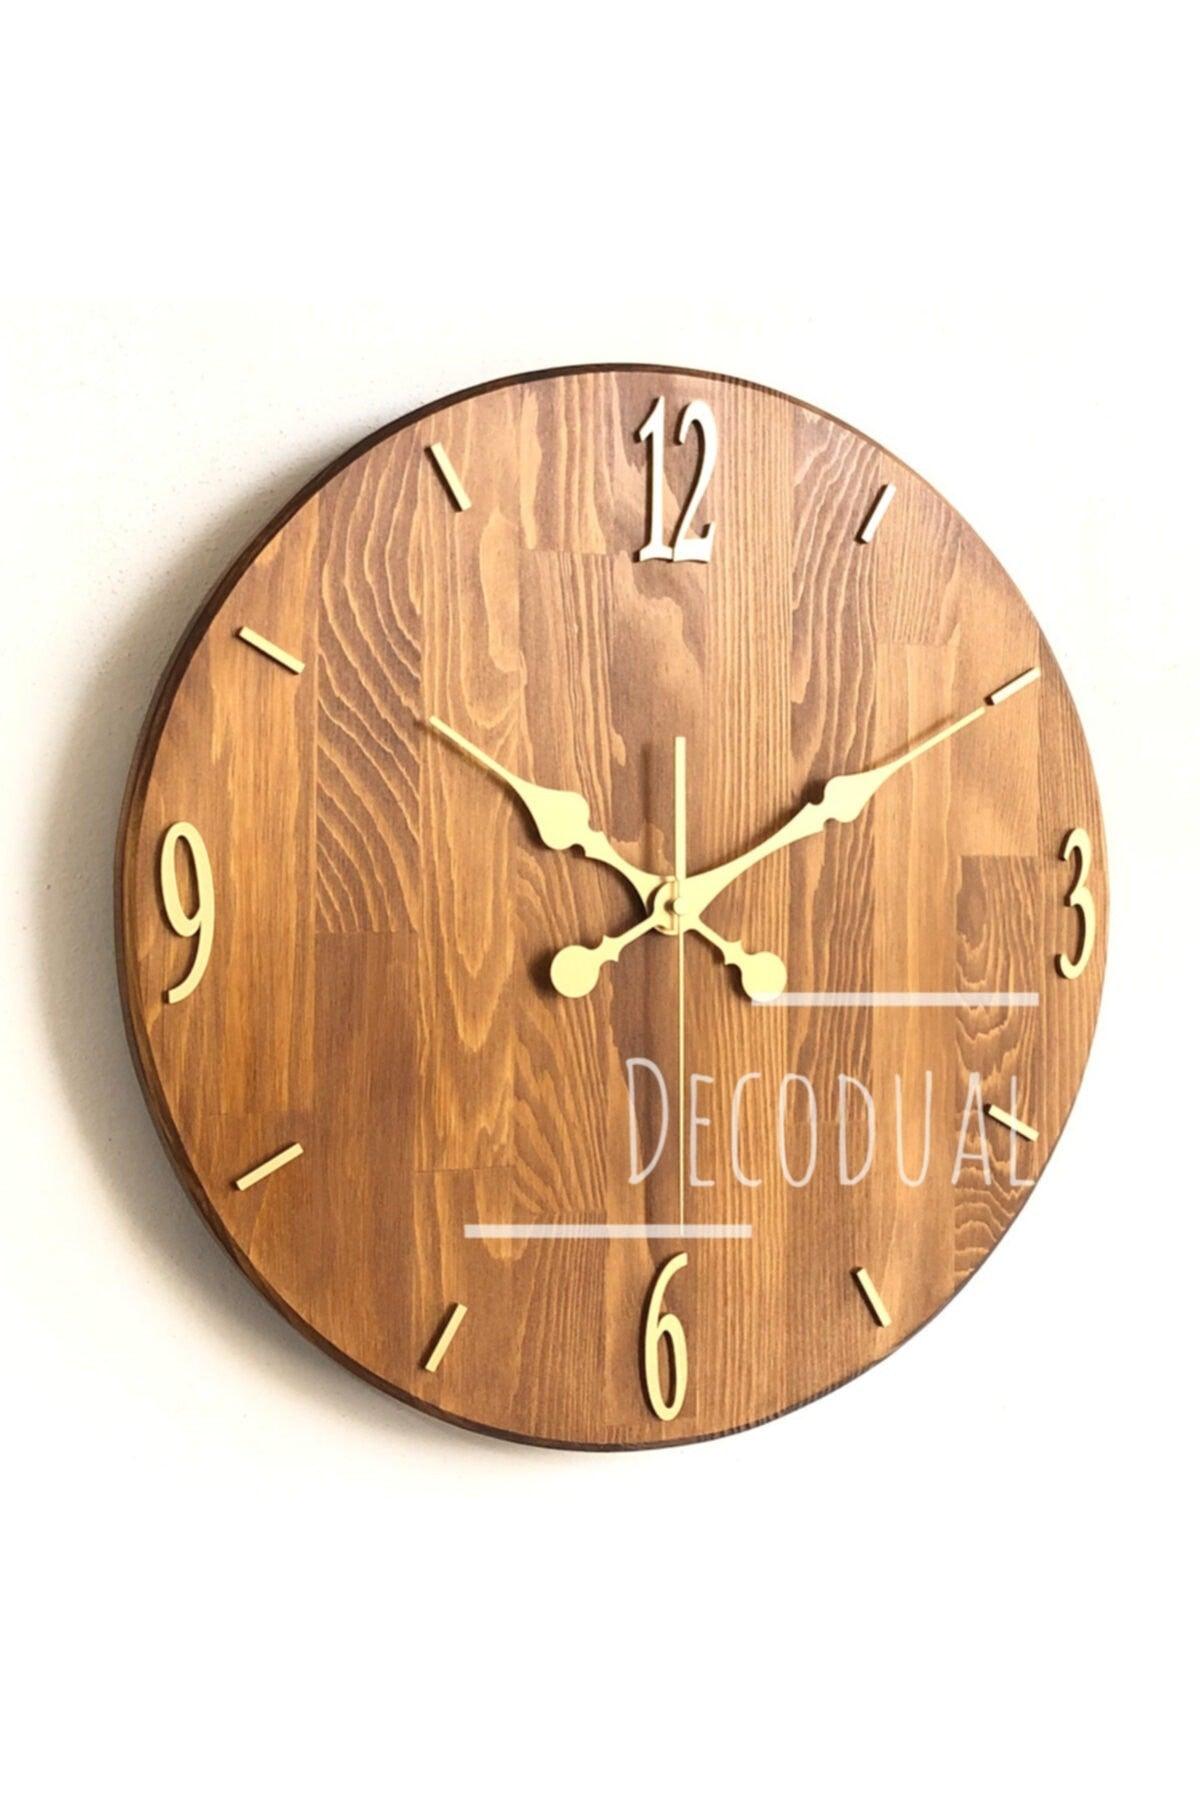 Natural Solid Wood Wall Clock 40cm Diameter - Swordslife